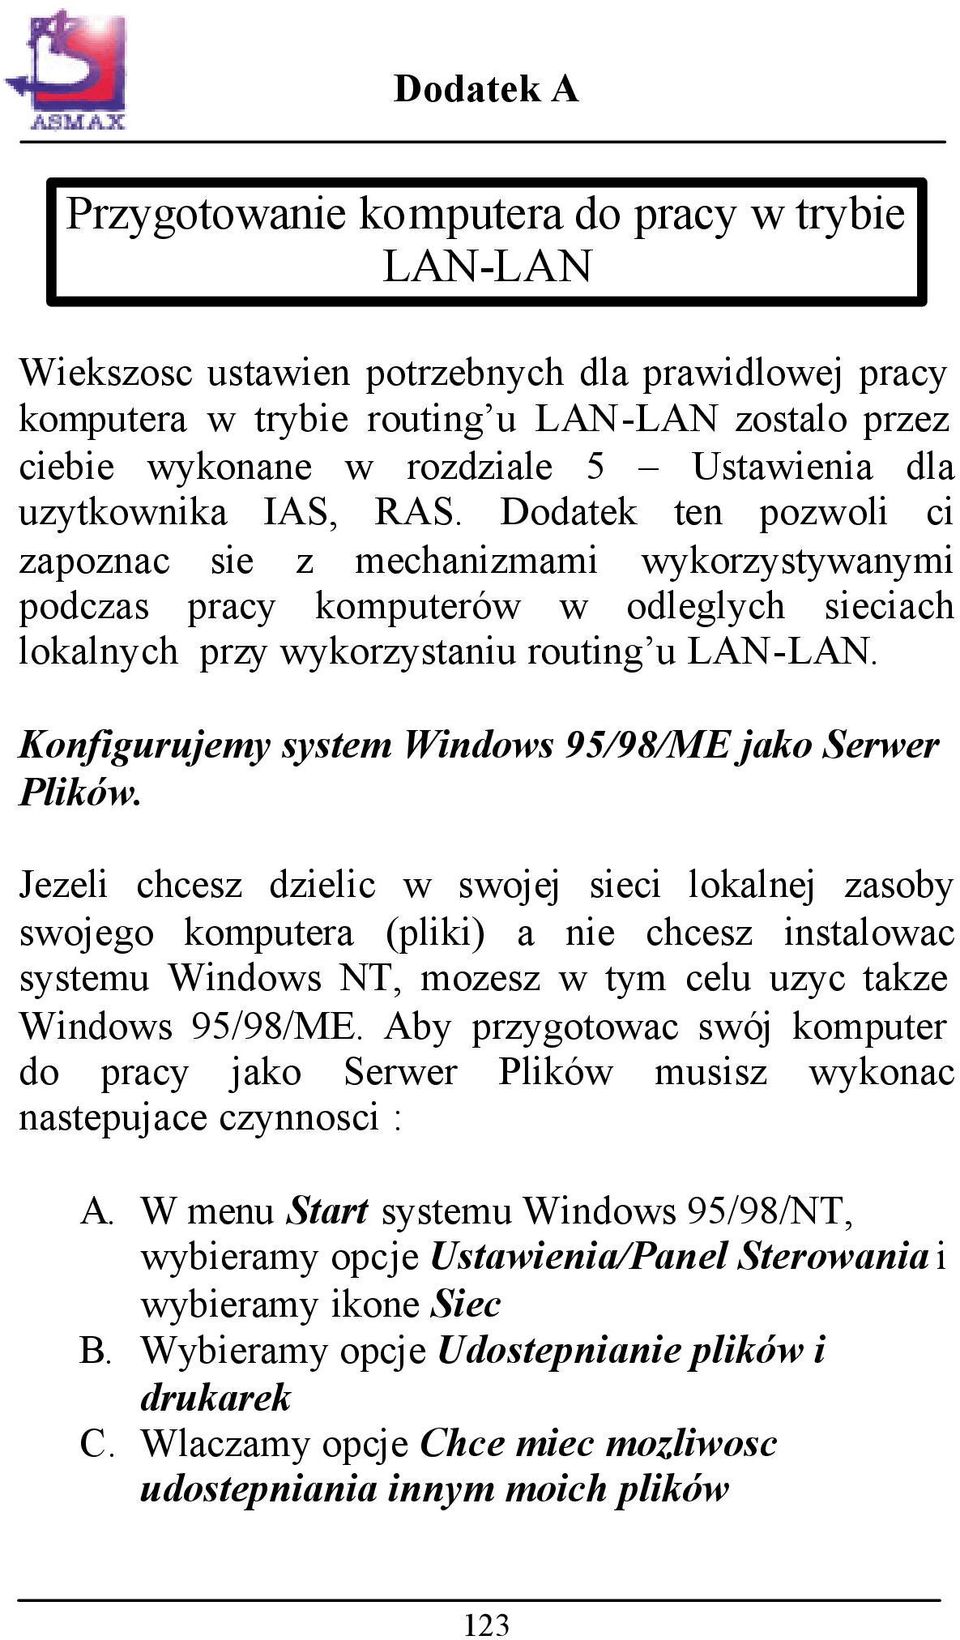 Konfigurujemy system Windows 95/98/ME jako Serwer Plików.